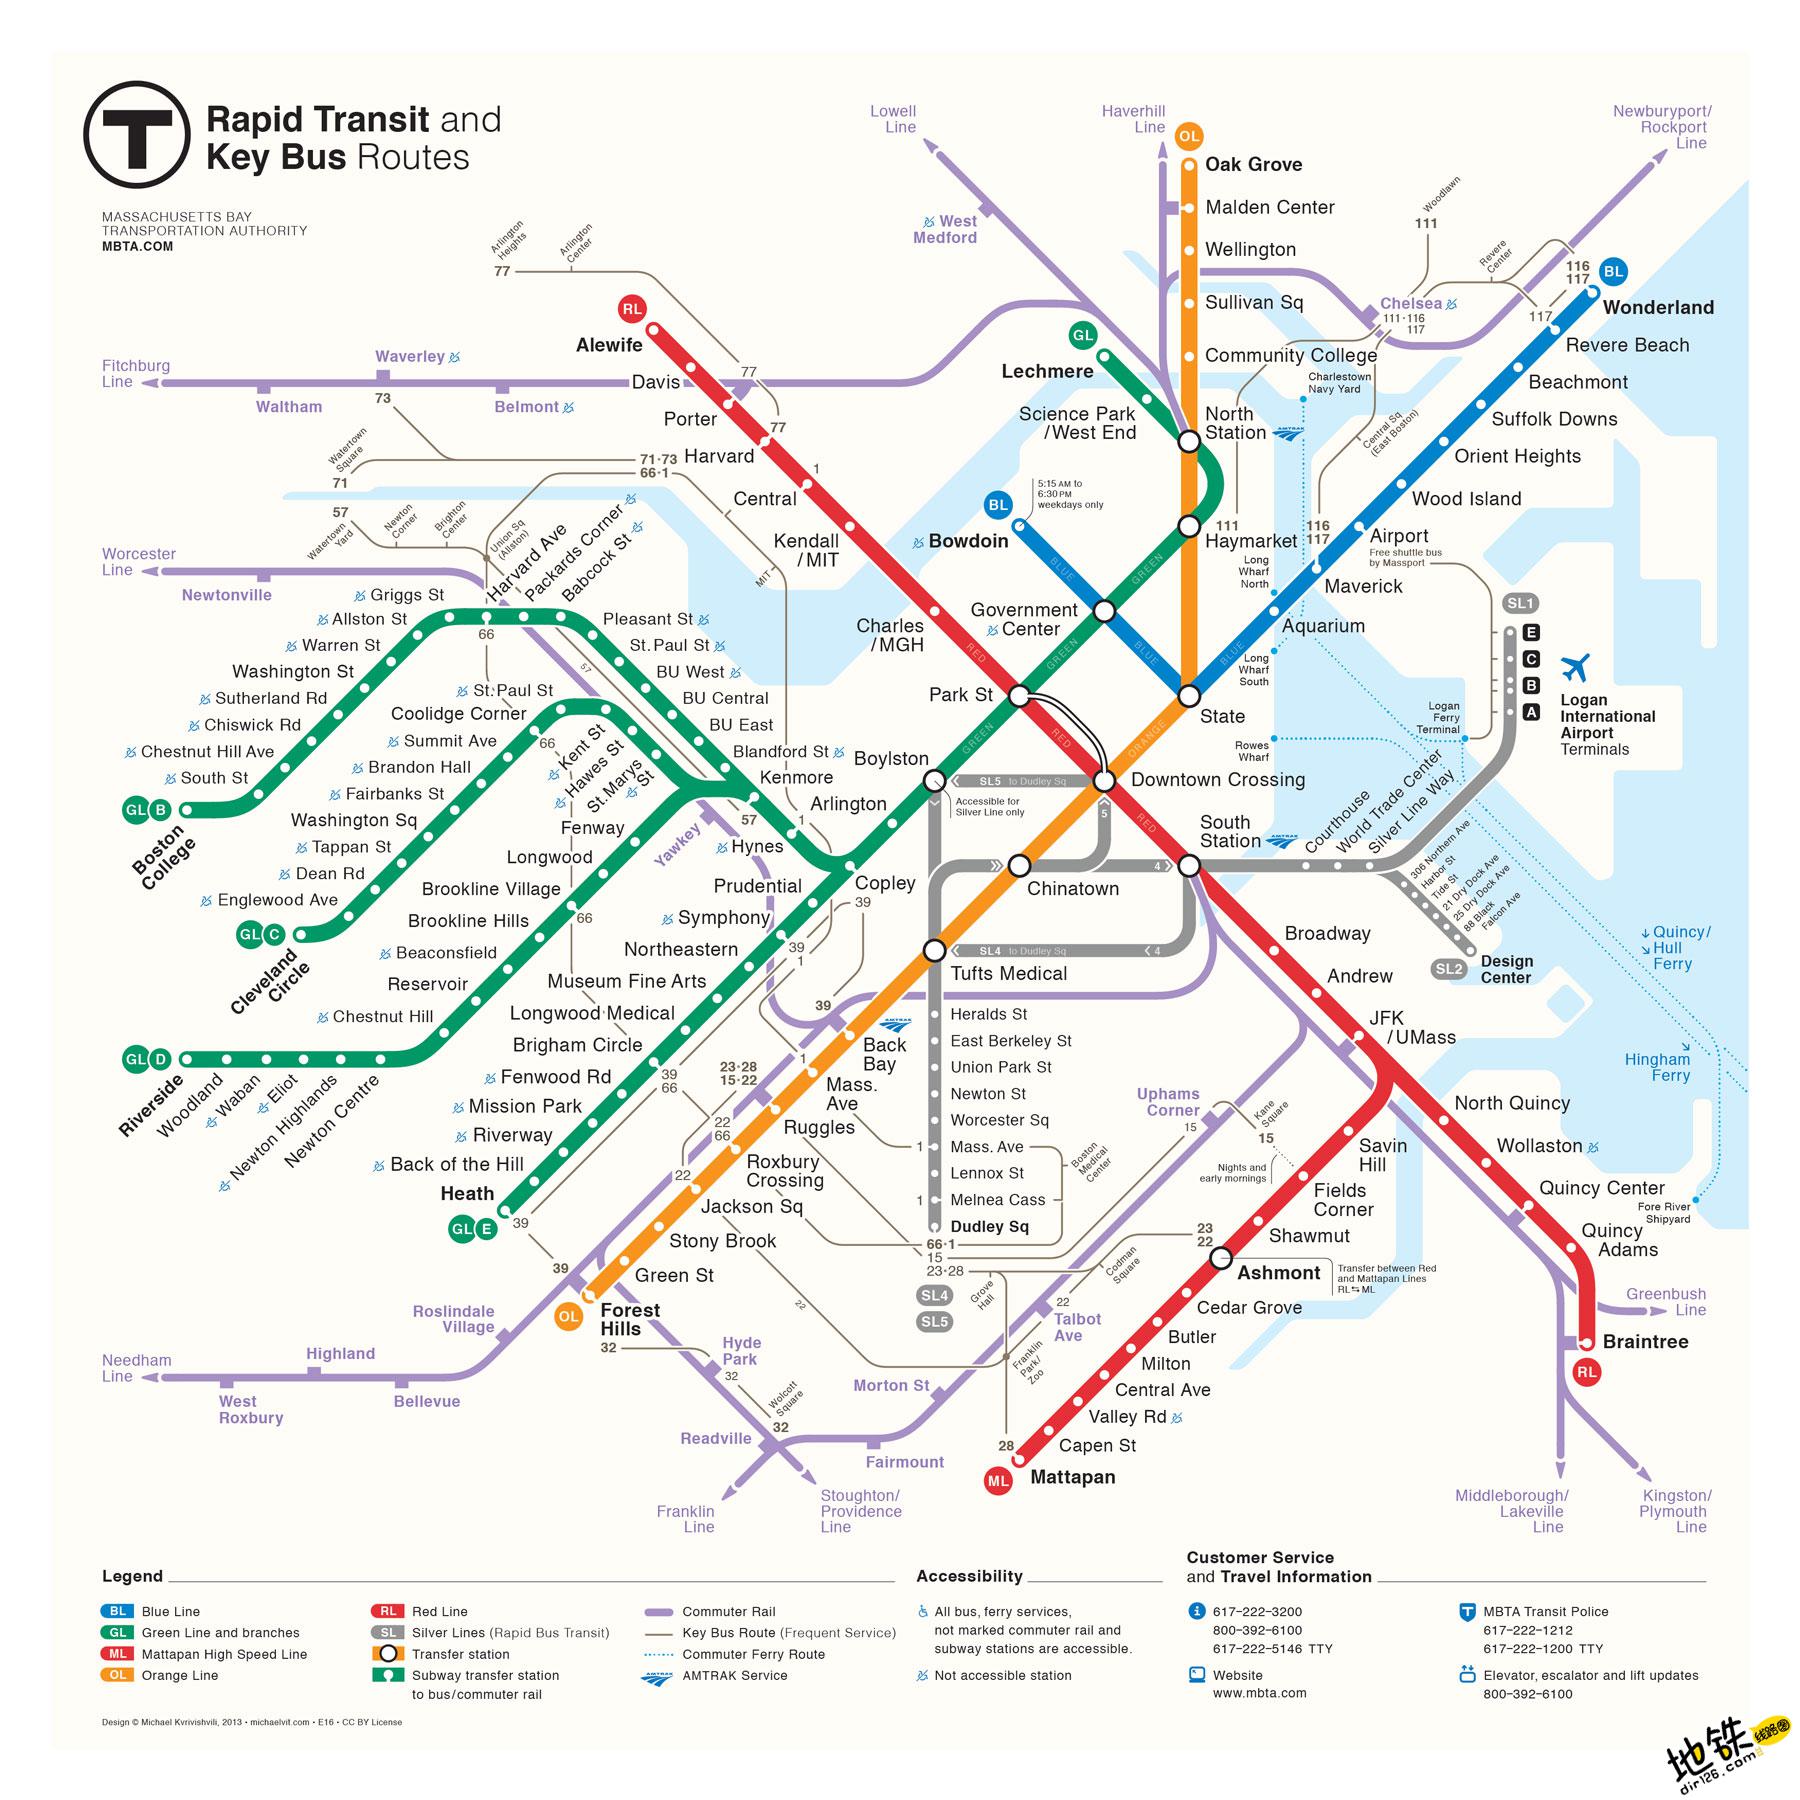 波士顿地铁蓝线图片